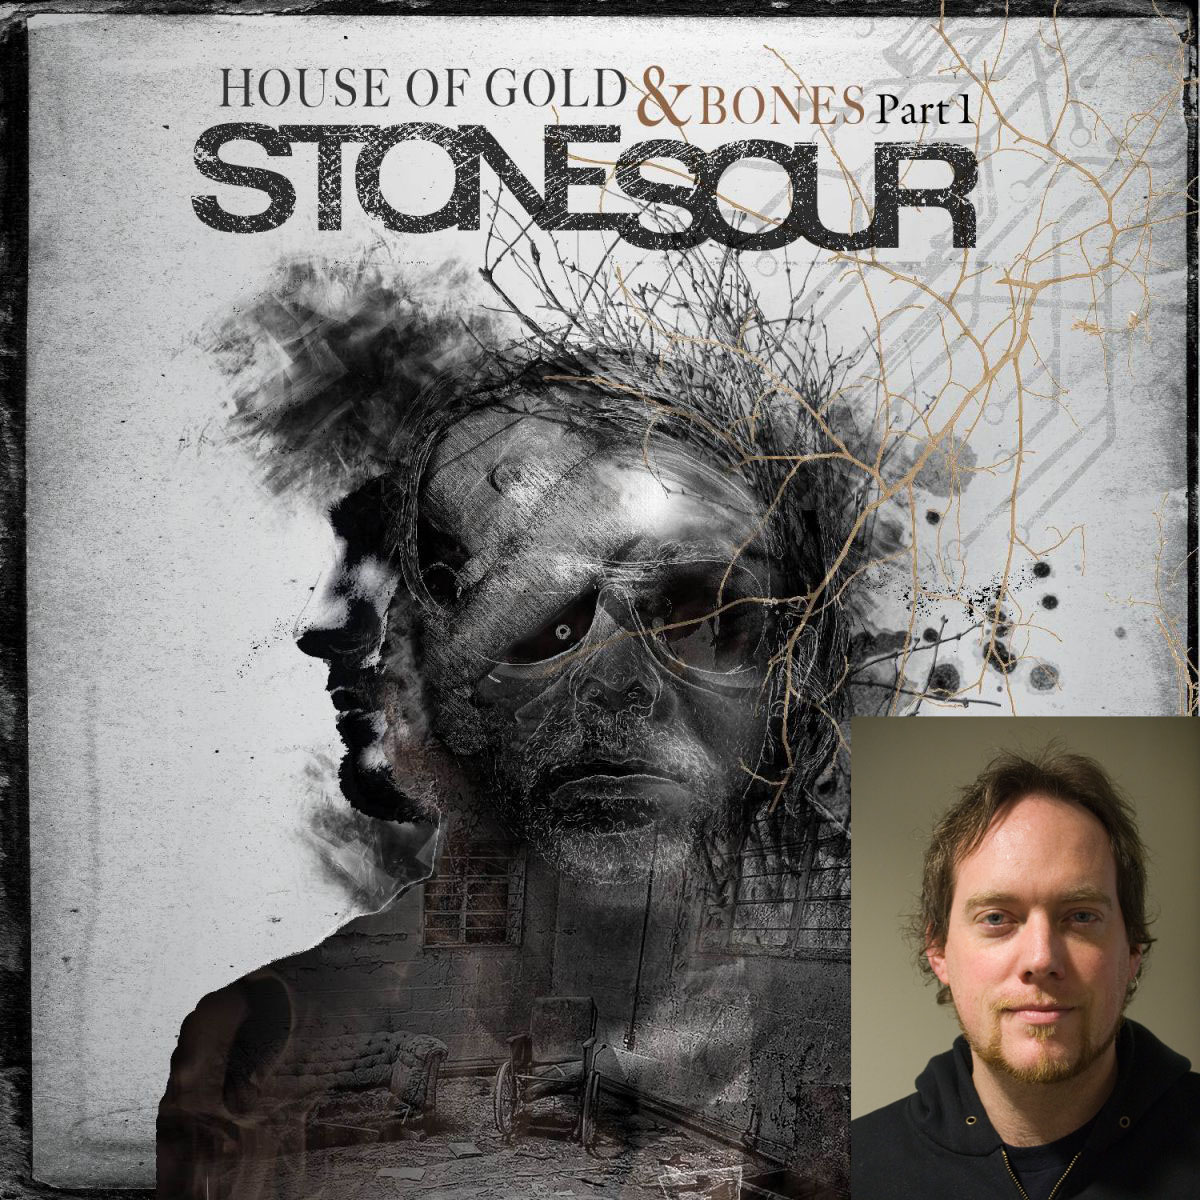 Stone Sour HOUSE OF GOLD & BONES PART 1 - Album des Monats in METAL HAMMER 11/2012